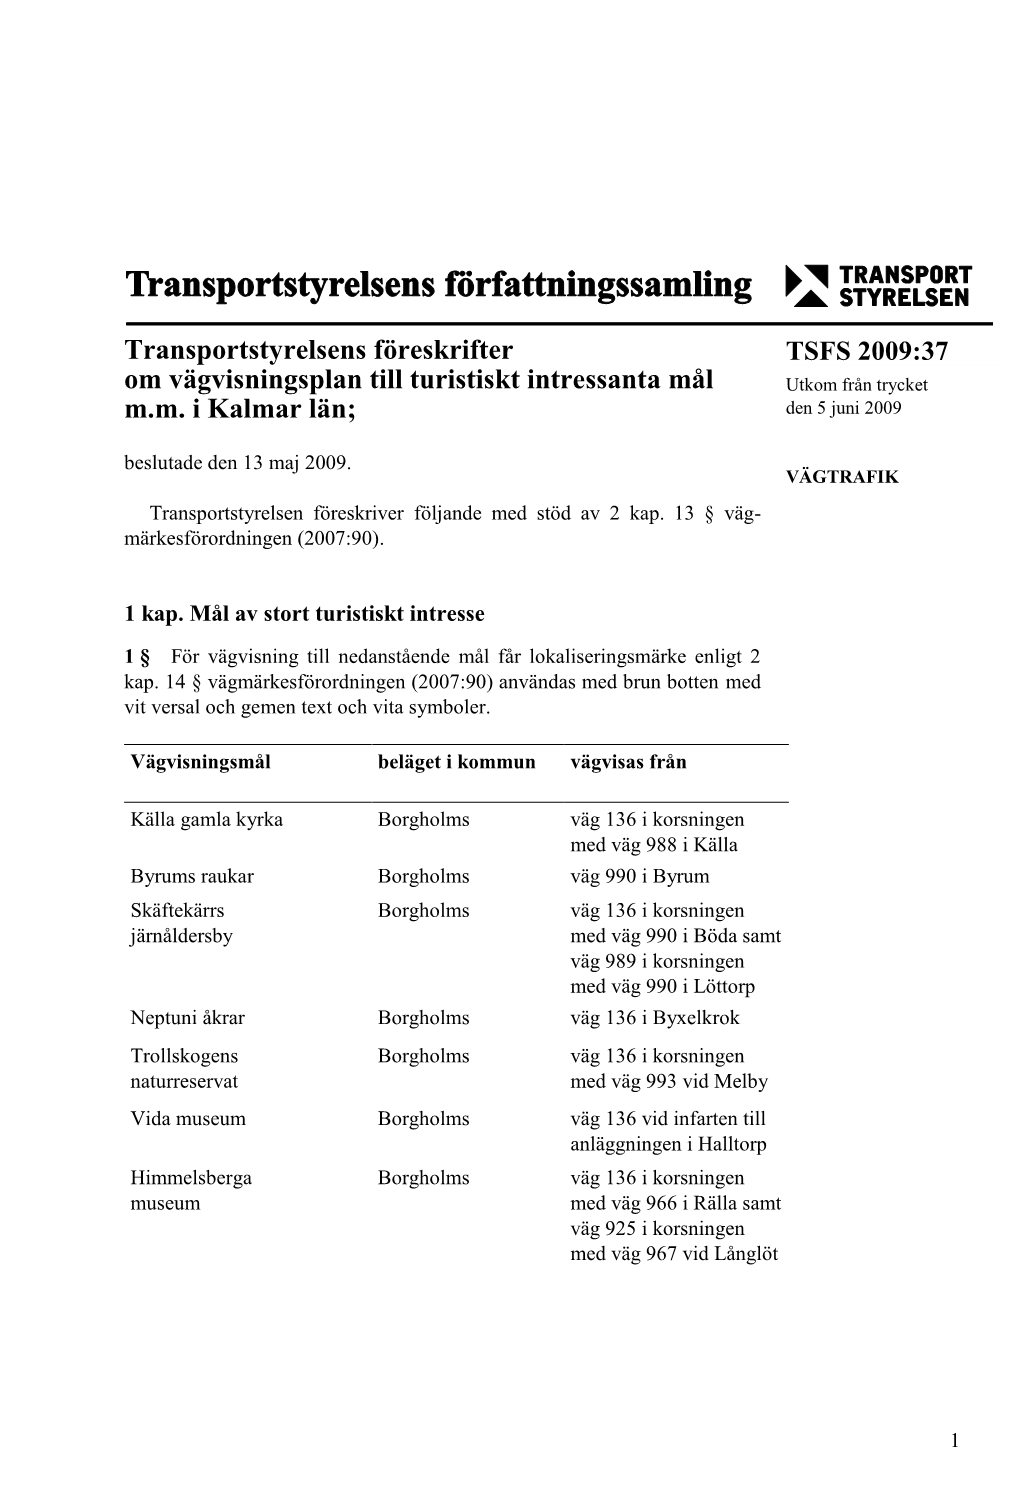 TSFS 2009:37 Om Vägvisningsplan Till Turistiskt Intressanta Mål Utkom Från Trycket M.M